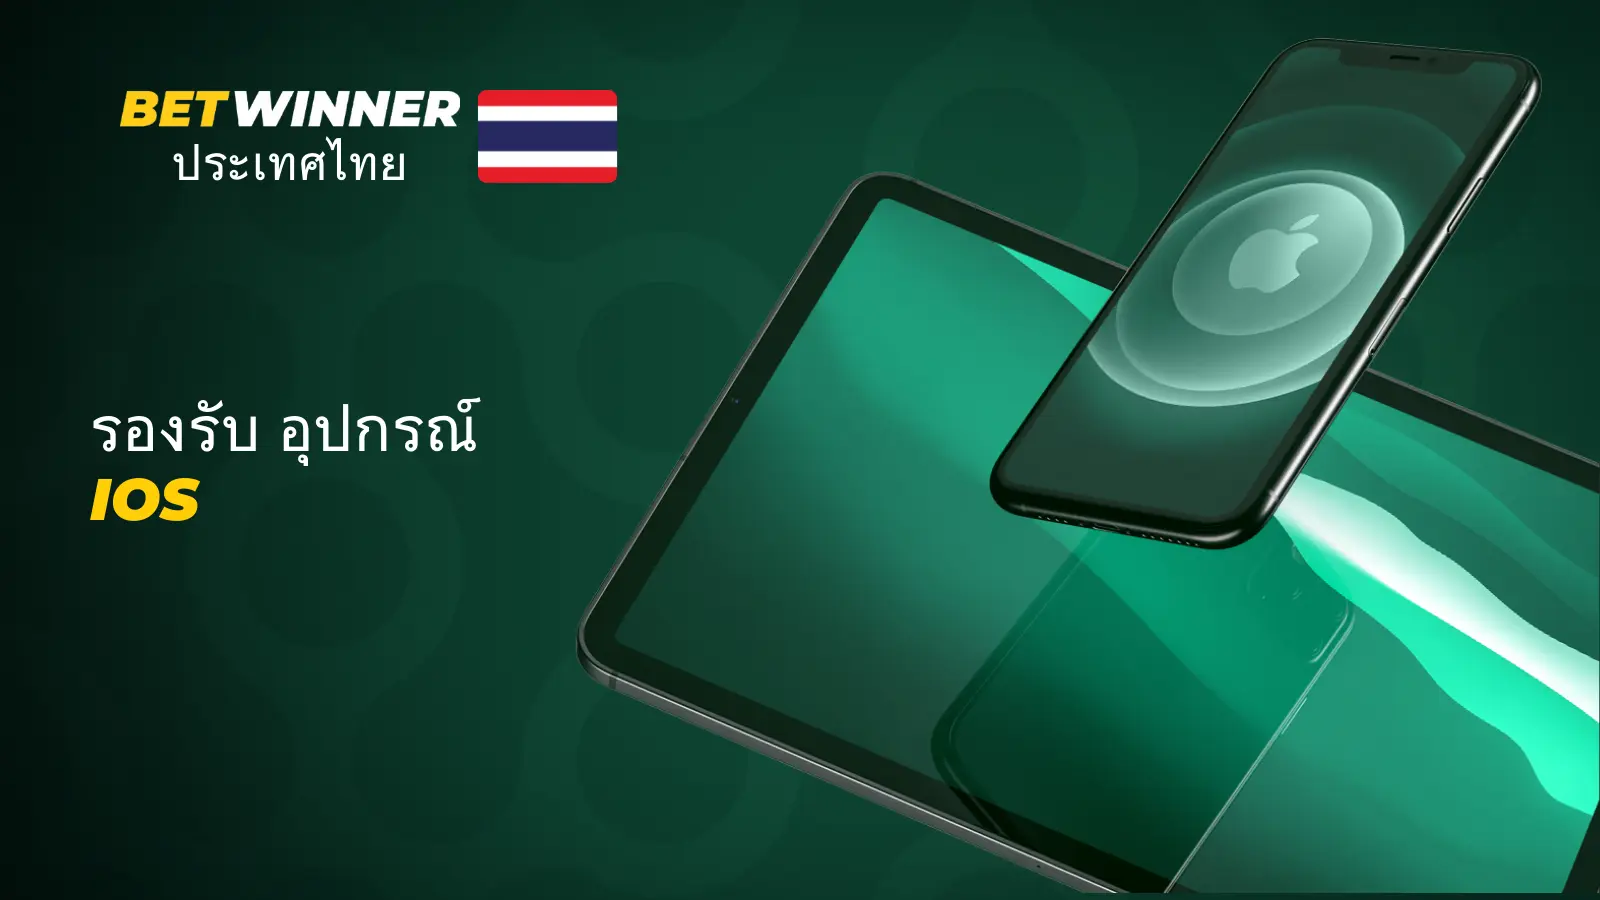 Betwinner ประเทศไทย